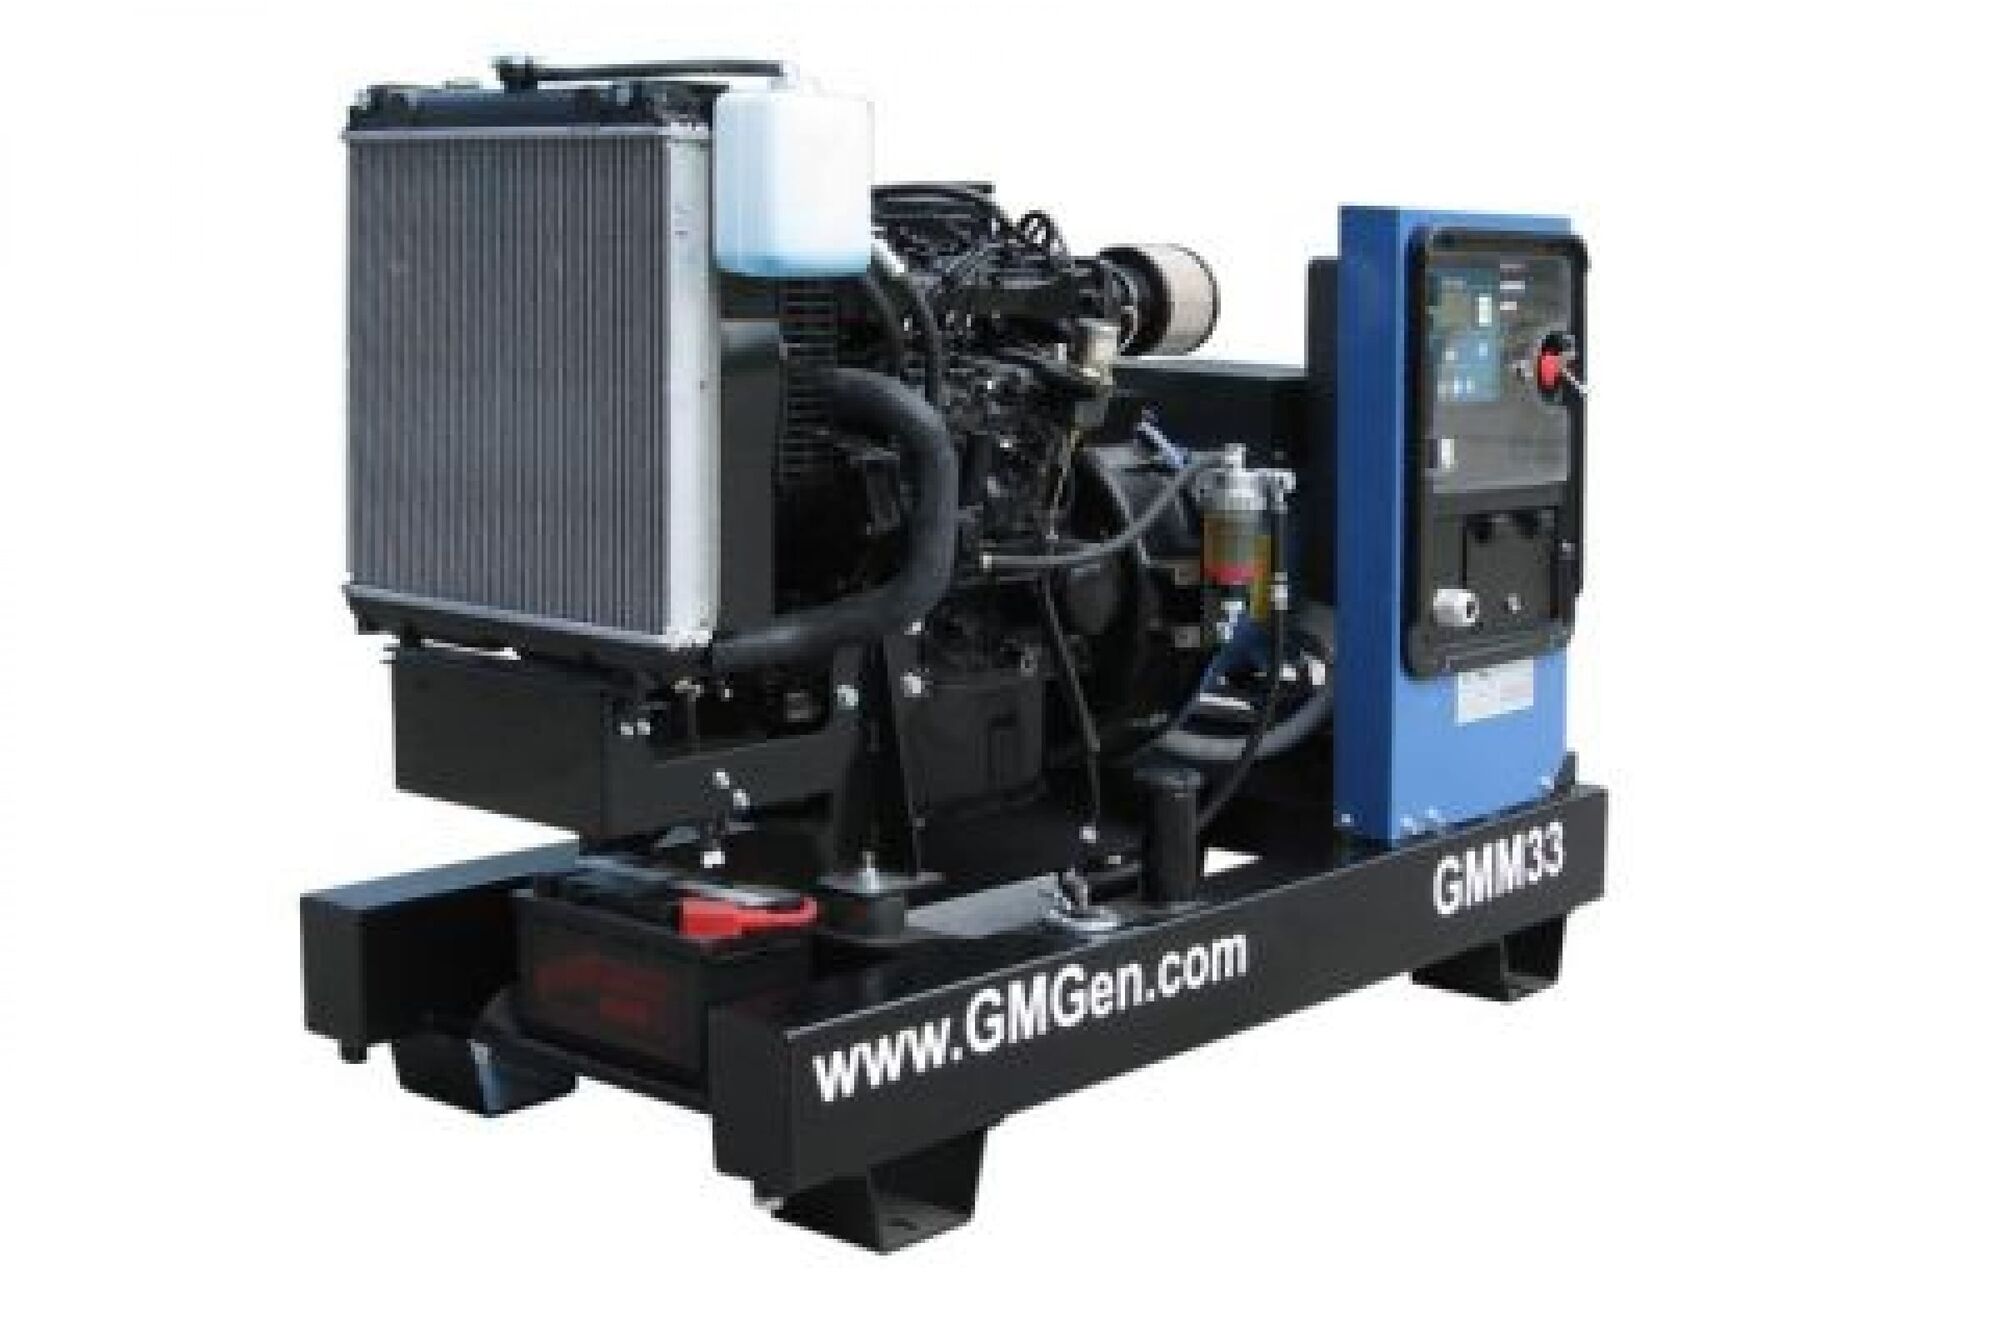 Дизель генератор GMGen Power Systems GMM33 24 кВт, 380/220 В 502035